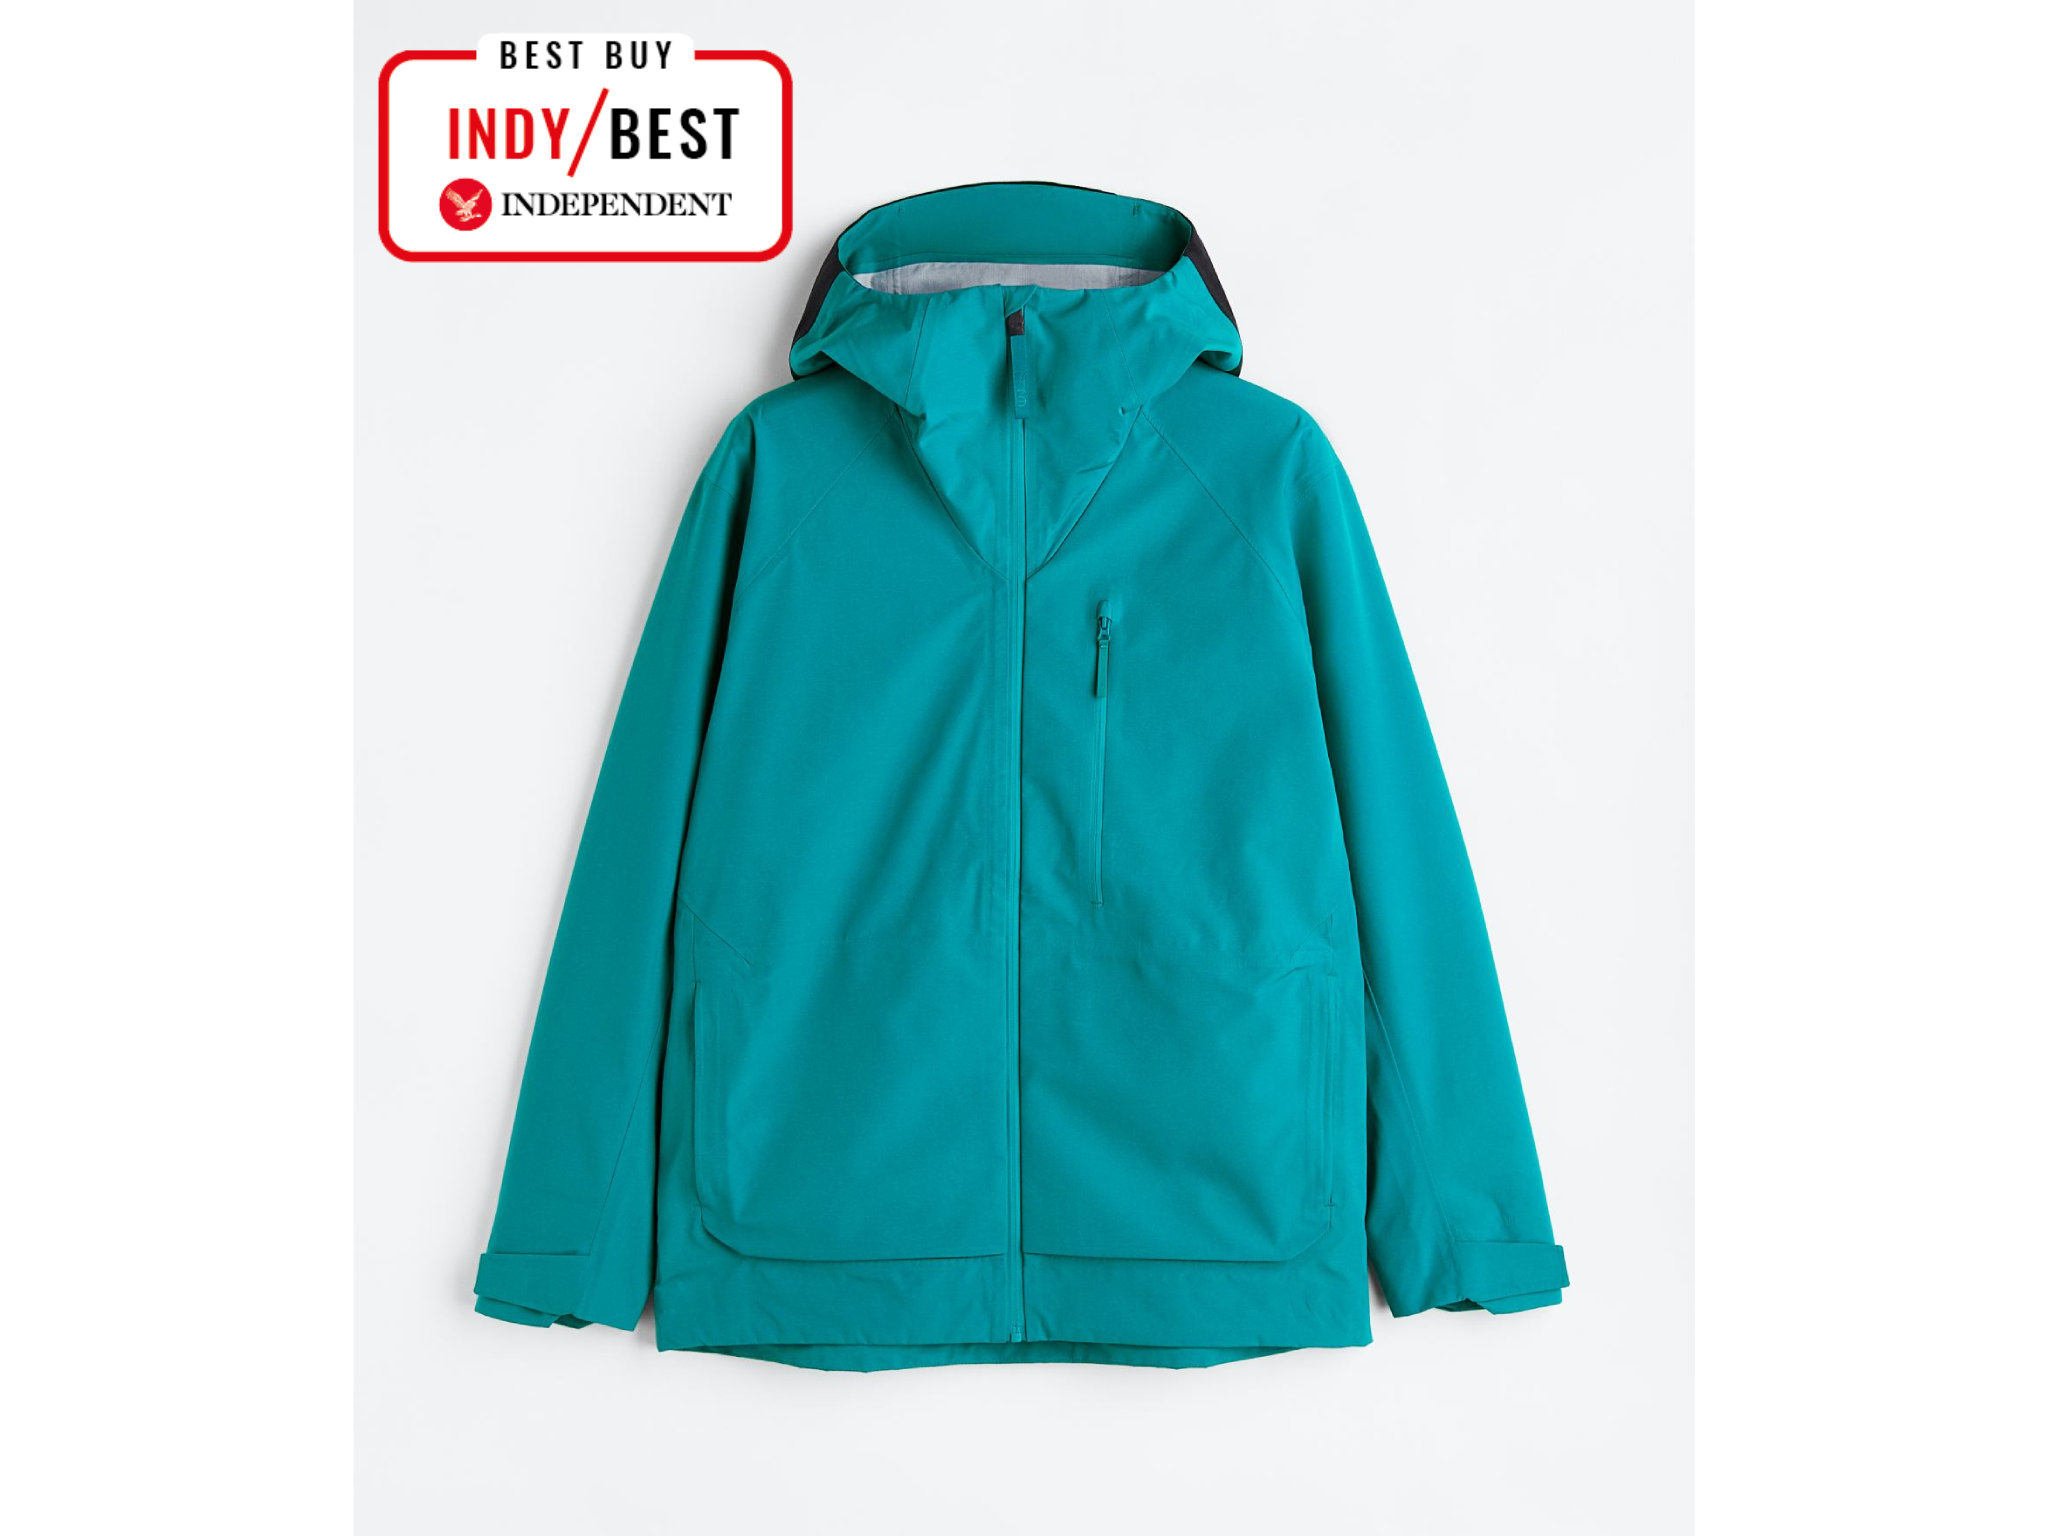 H&M-mens-ski-jacket-indybest